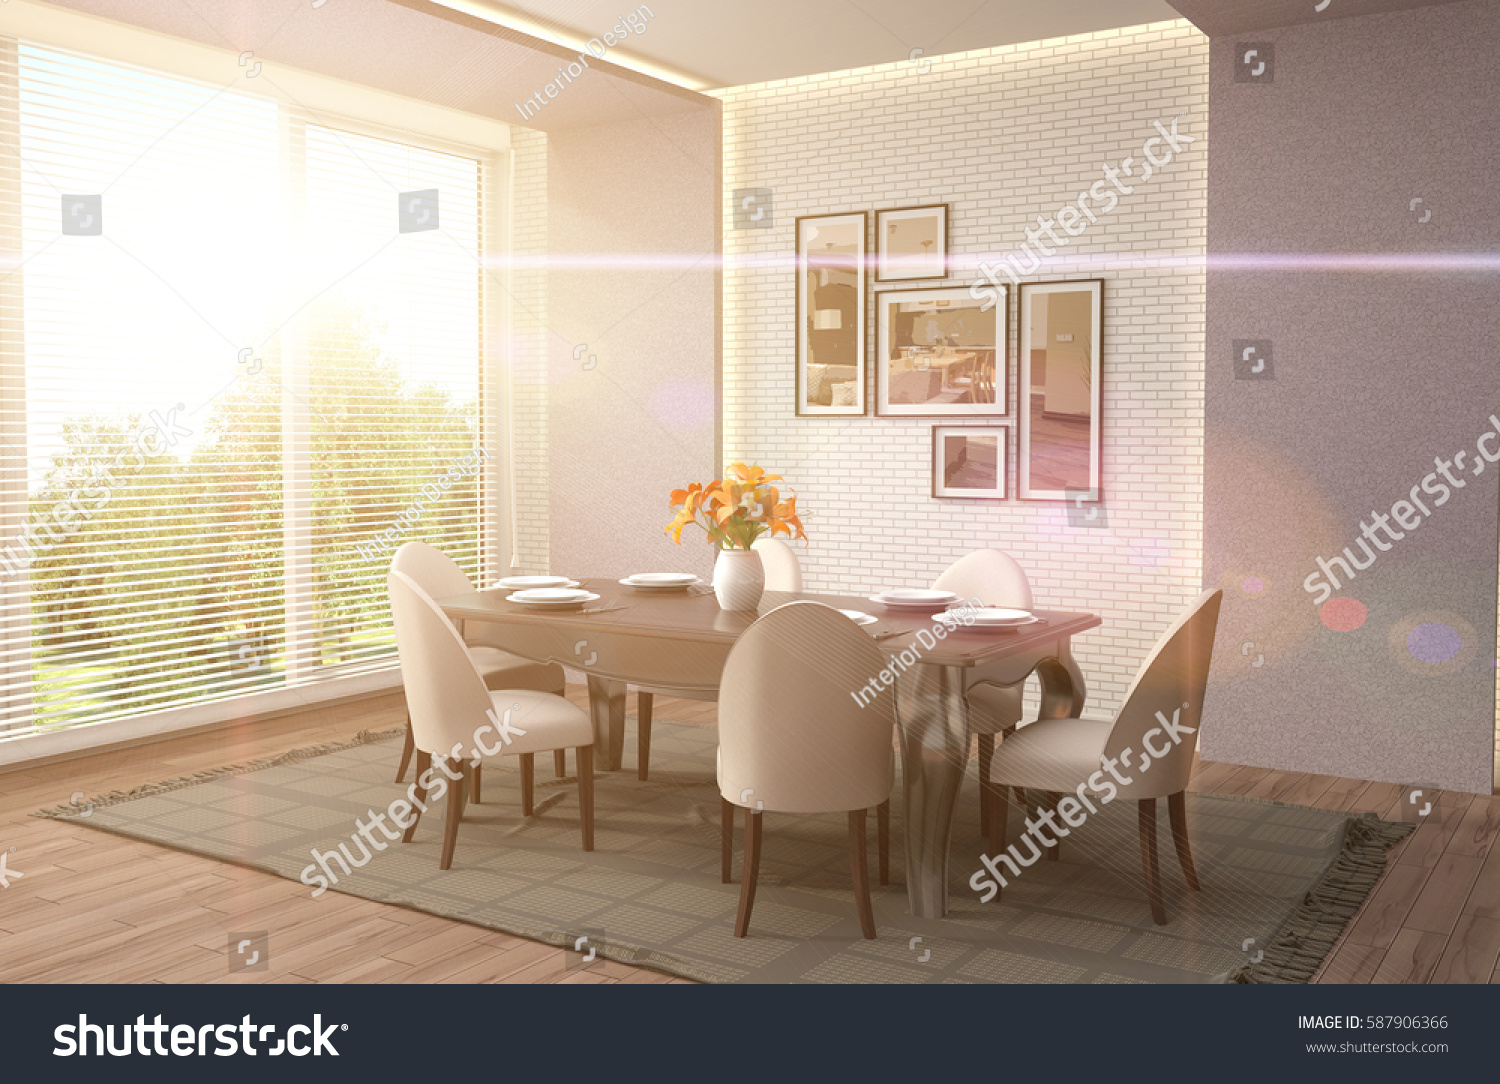 Interior dining area. 3d illustration #587906366